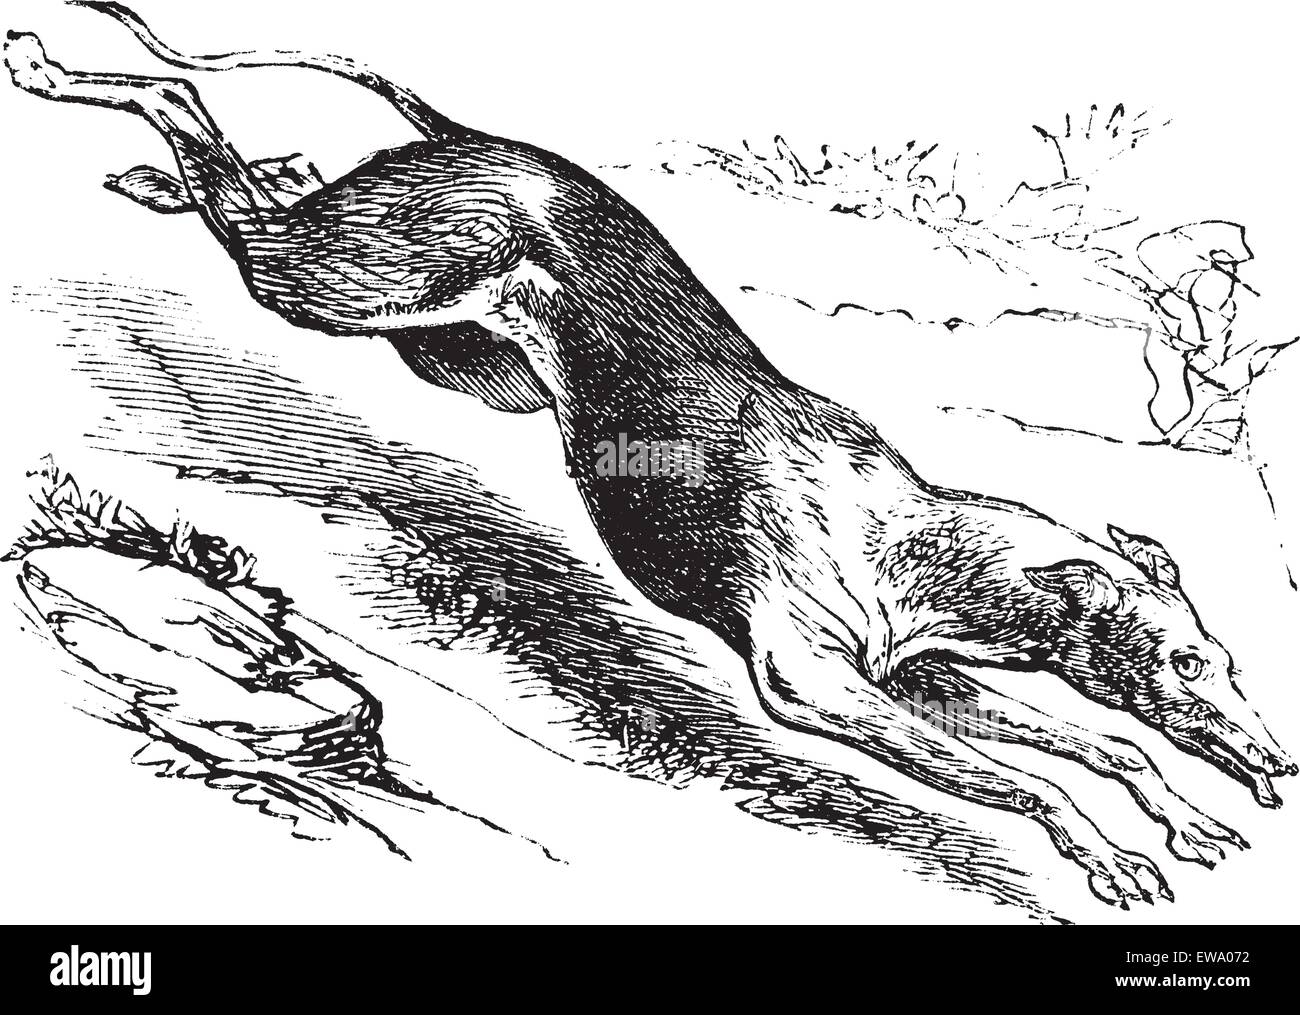 Greyhound anglais ou Canis lupus familiaris, gravure d'époque. Vieille illustration gravée d'un Greyhound anglais. Illustration de Vecteur